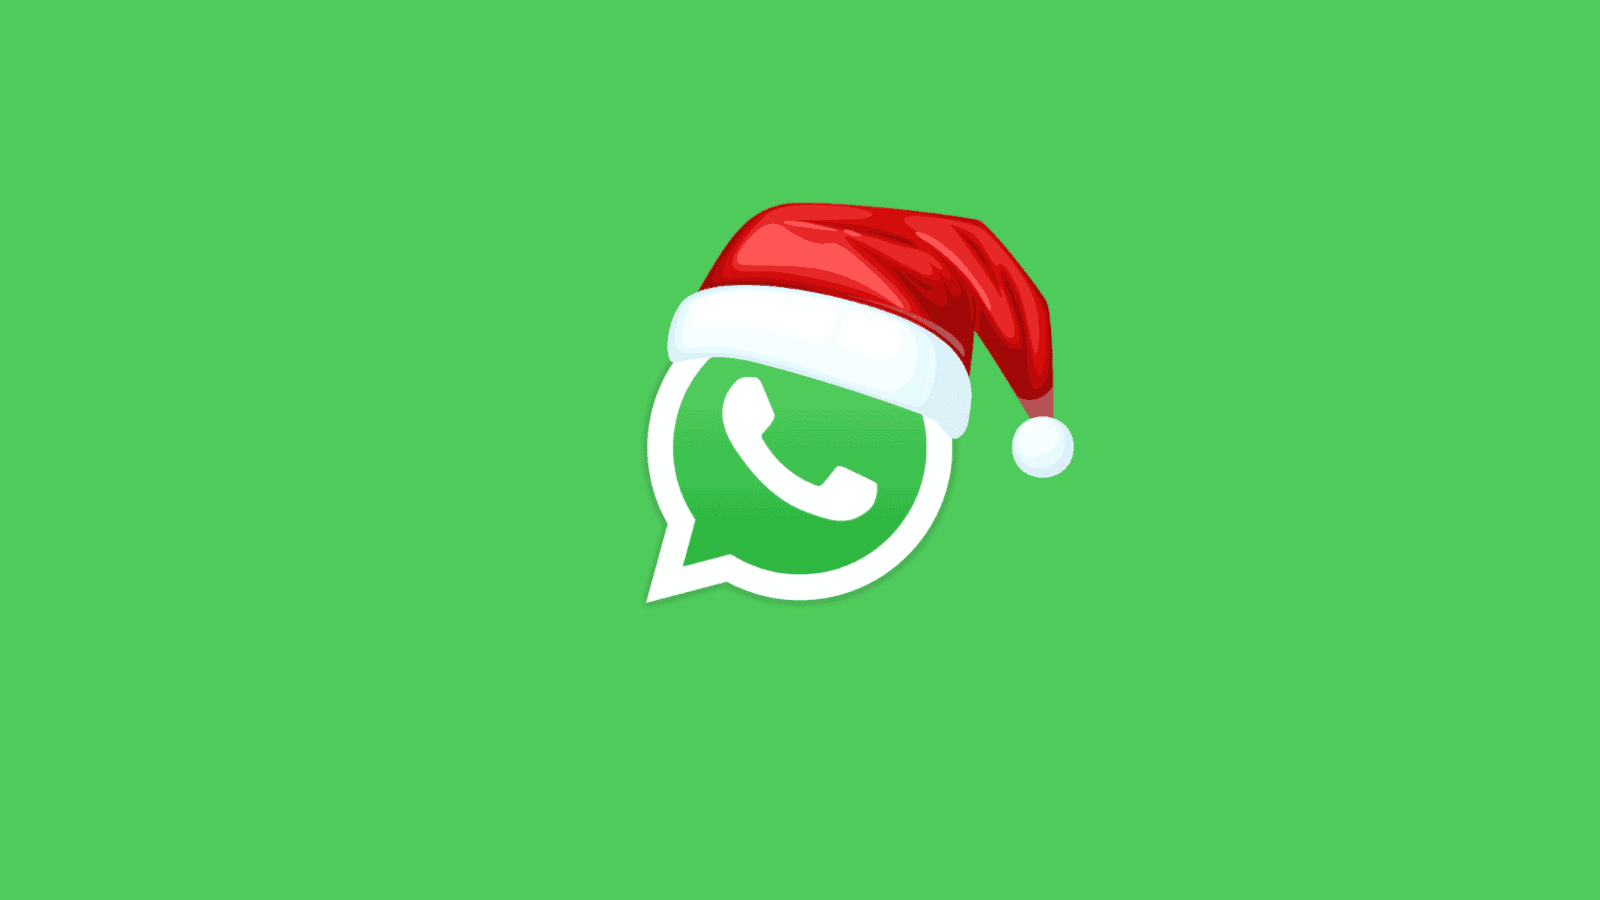 WhatsApp, il trucco gratis per fare gli auguri di Natale a tutti in un minuto